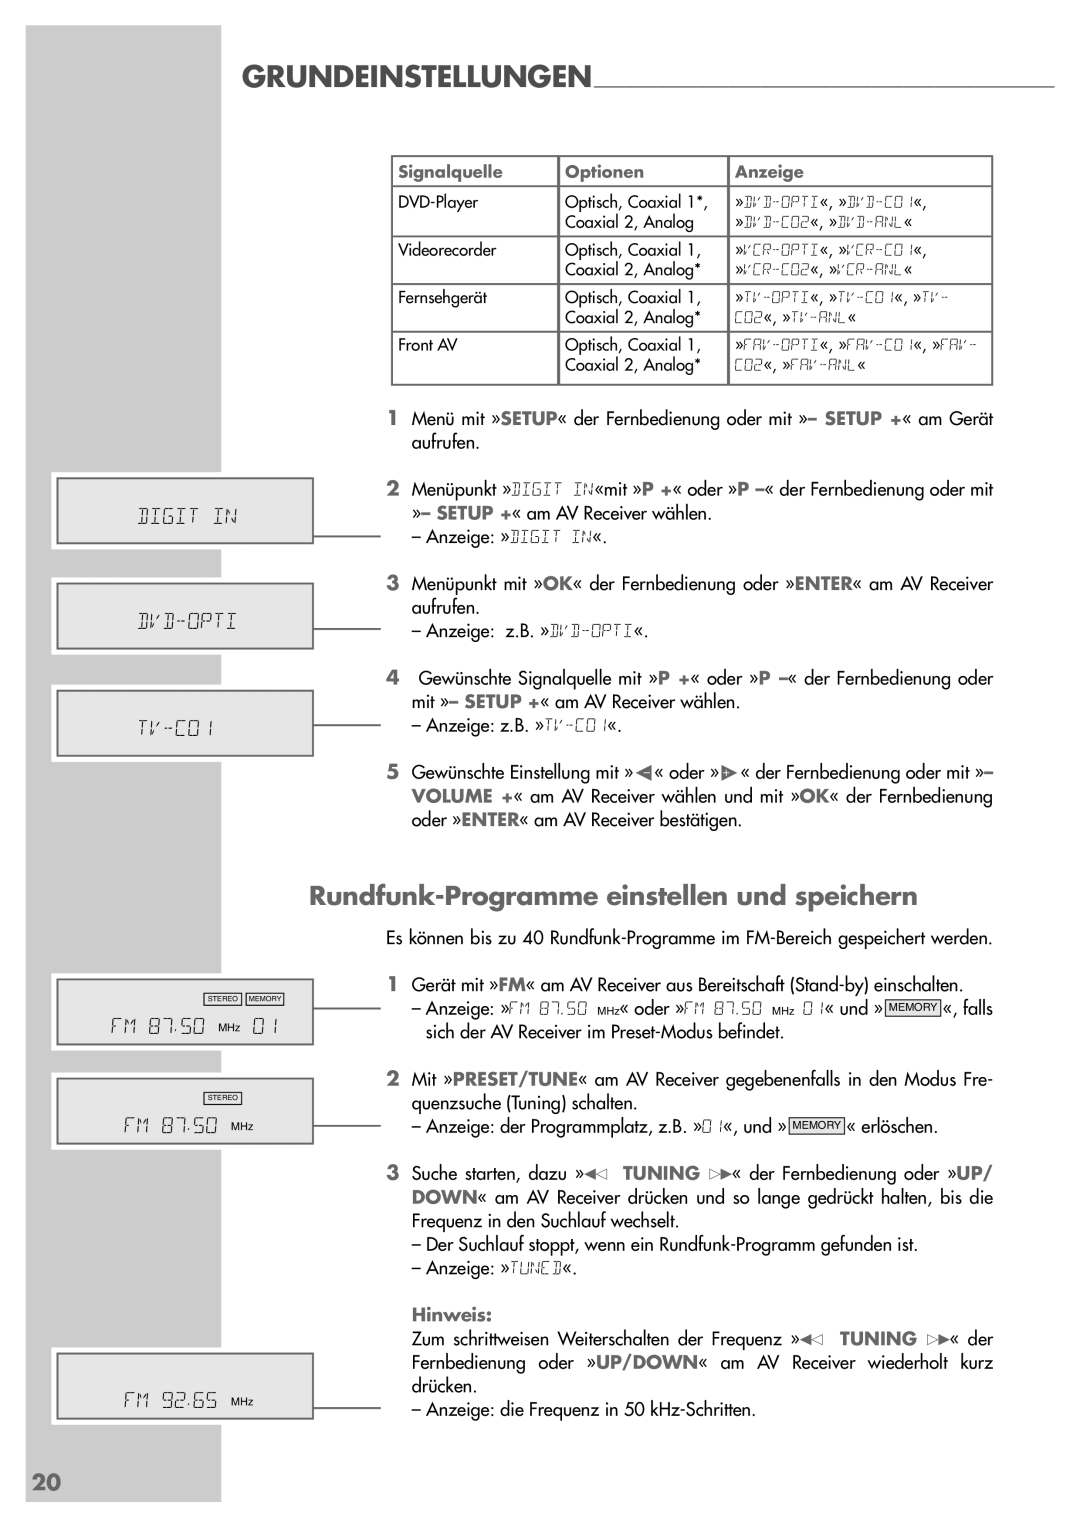 Grundig AVR 5200 DD manual Rundfunk-Programmeeinstellen und speichern, DIGIT IN DVD-OPTI TV-CO1, FM 87. 50 MHz 